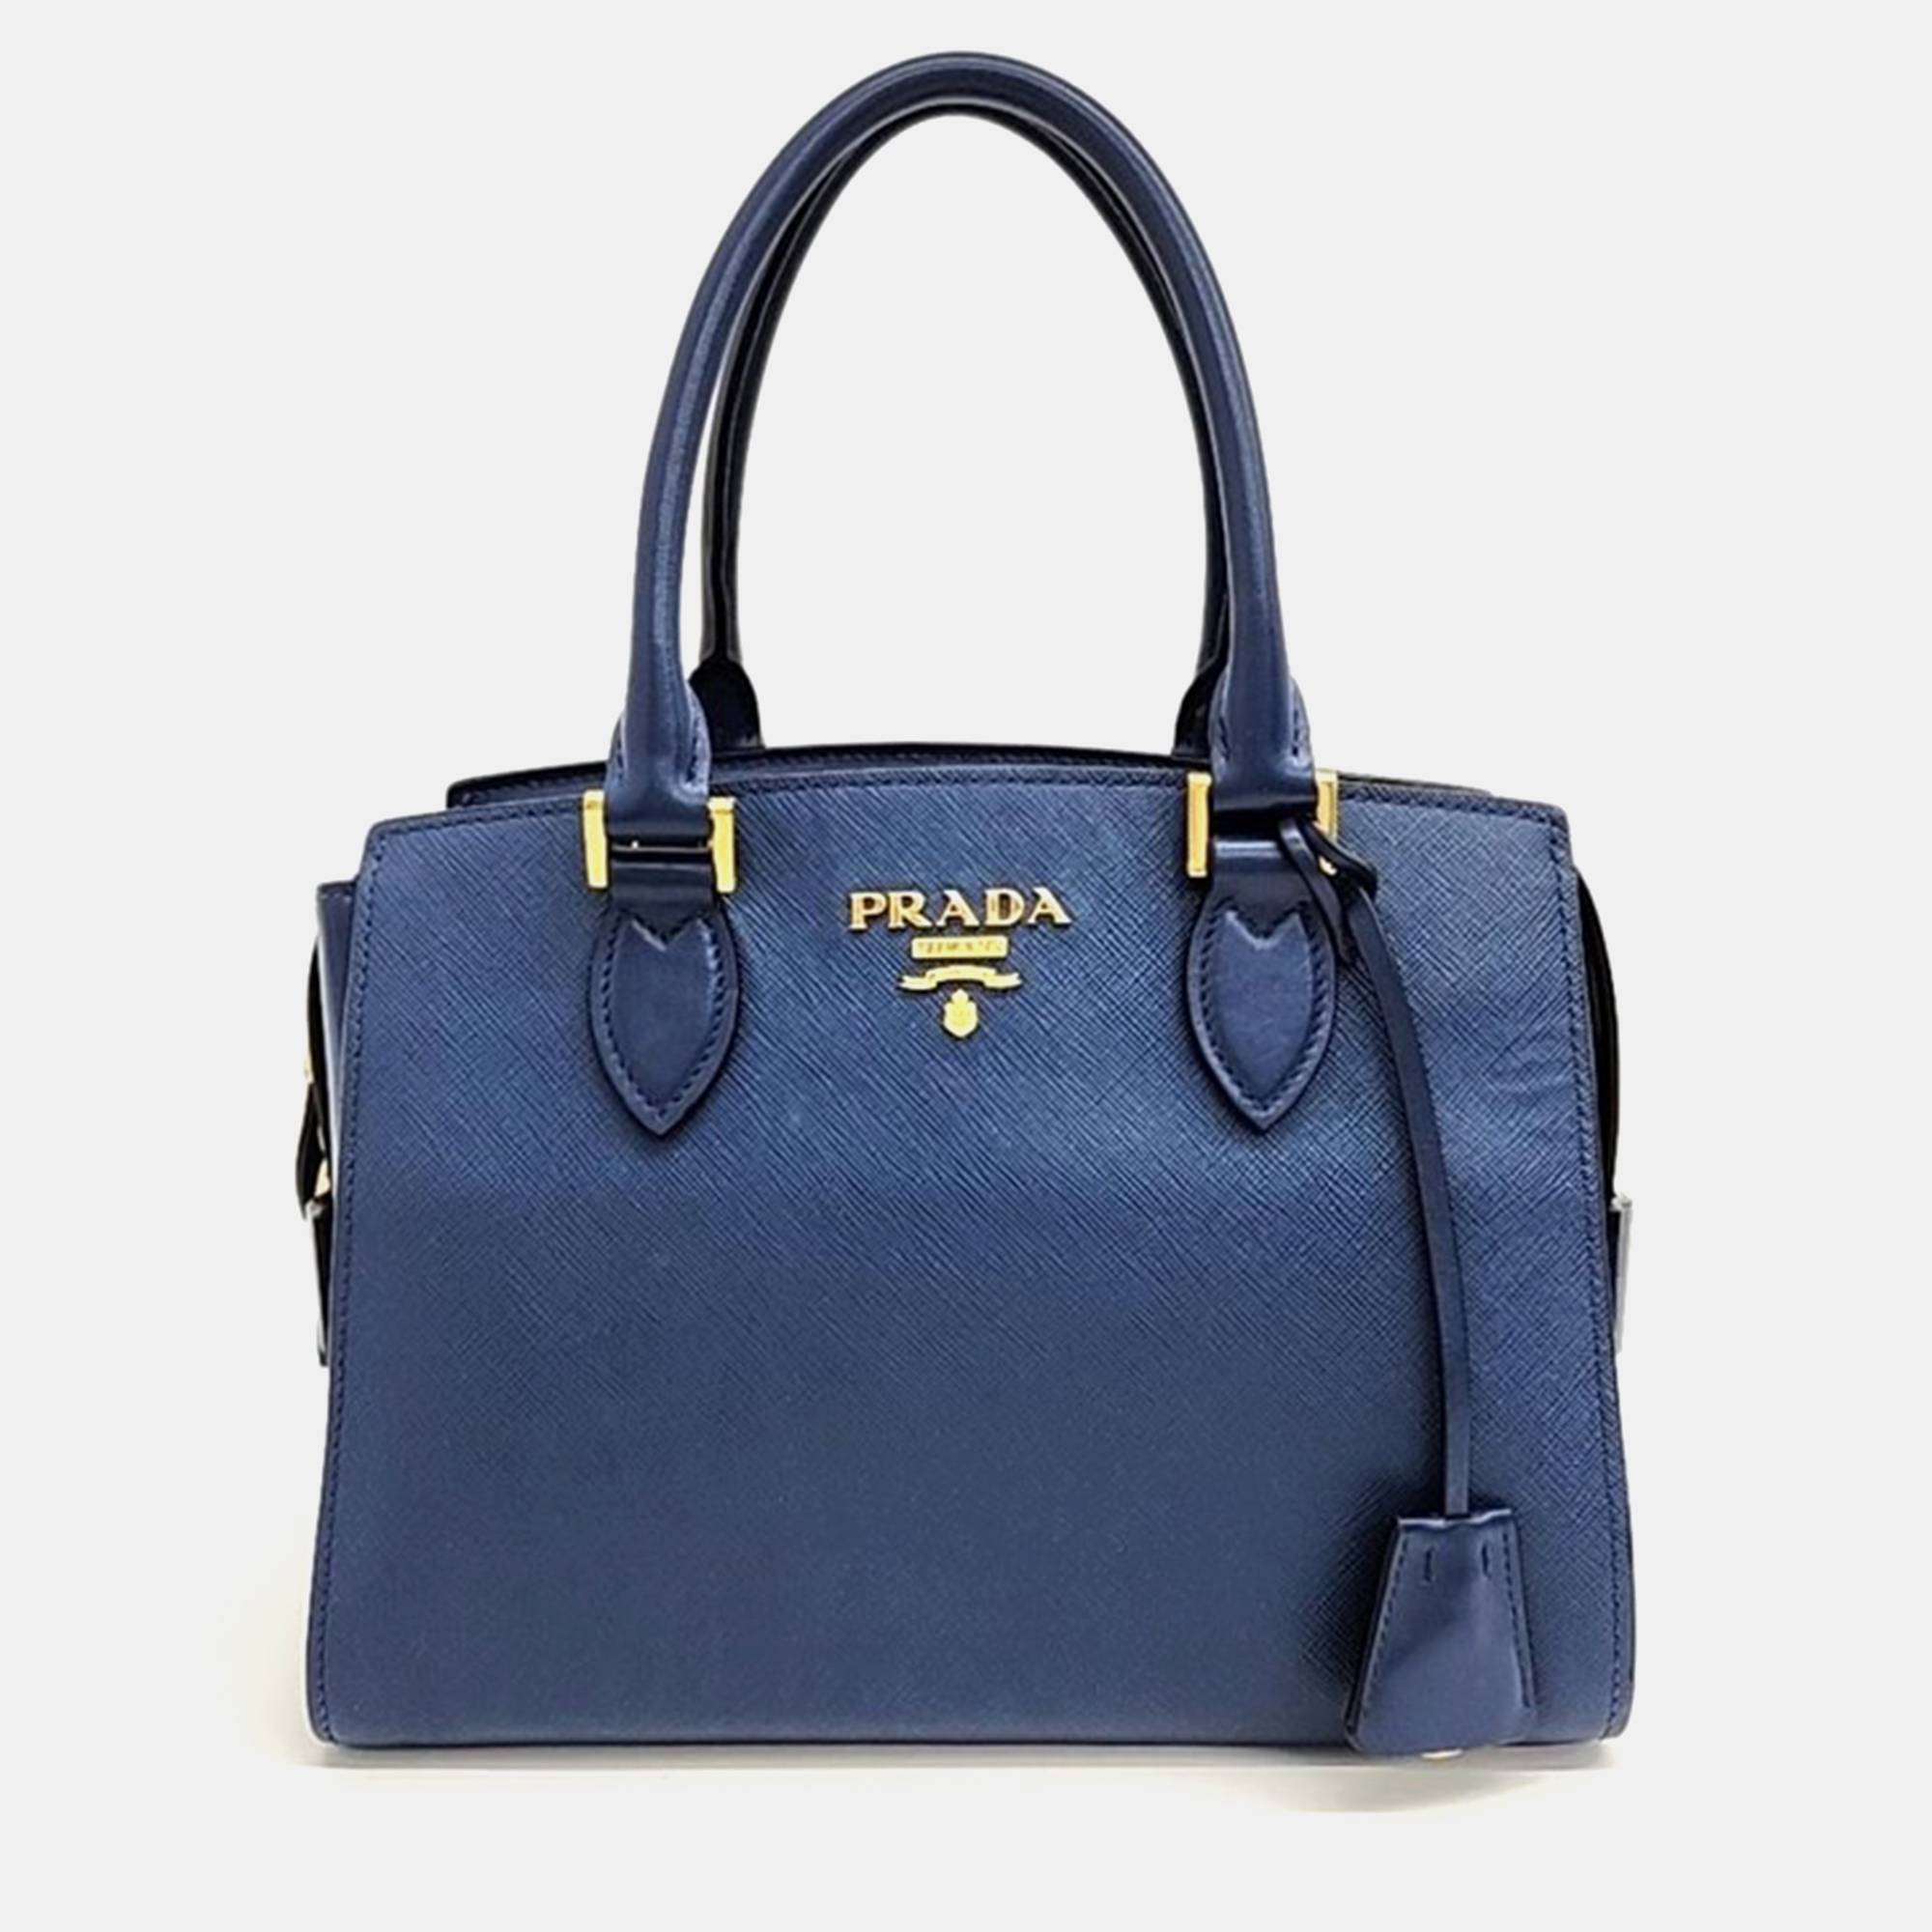 

Prada Saffiano Tote and Shoulder Bag, Blue